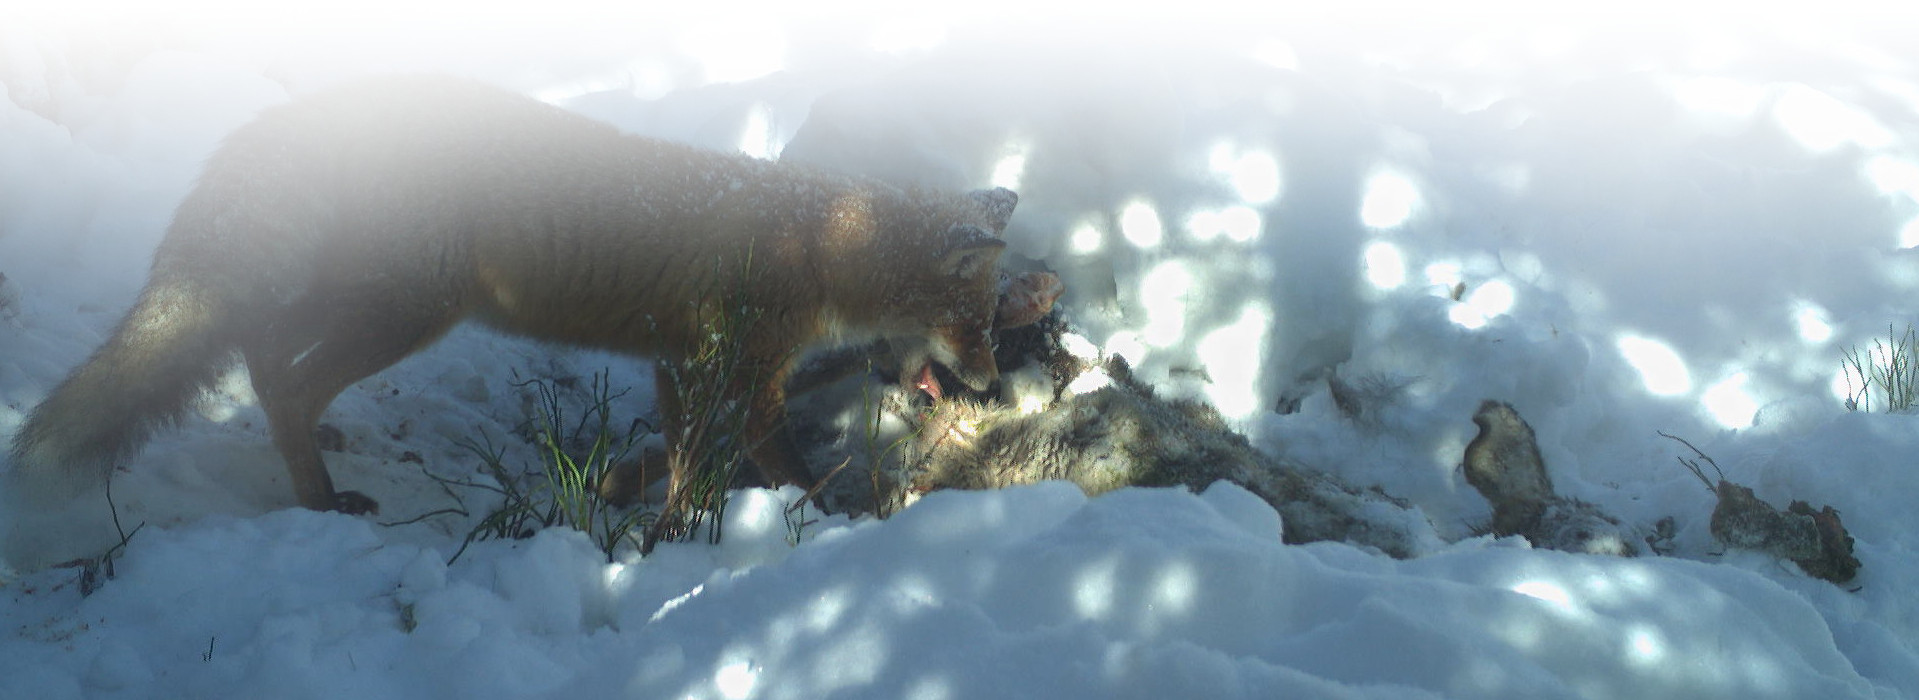 Ein Fuchs frisst an einem toten Tier im Schnee. Fotofallenbild aus dem Nationalpark Schwarzwald